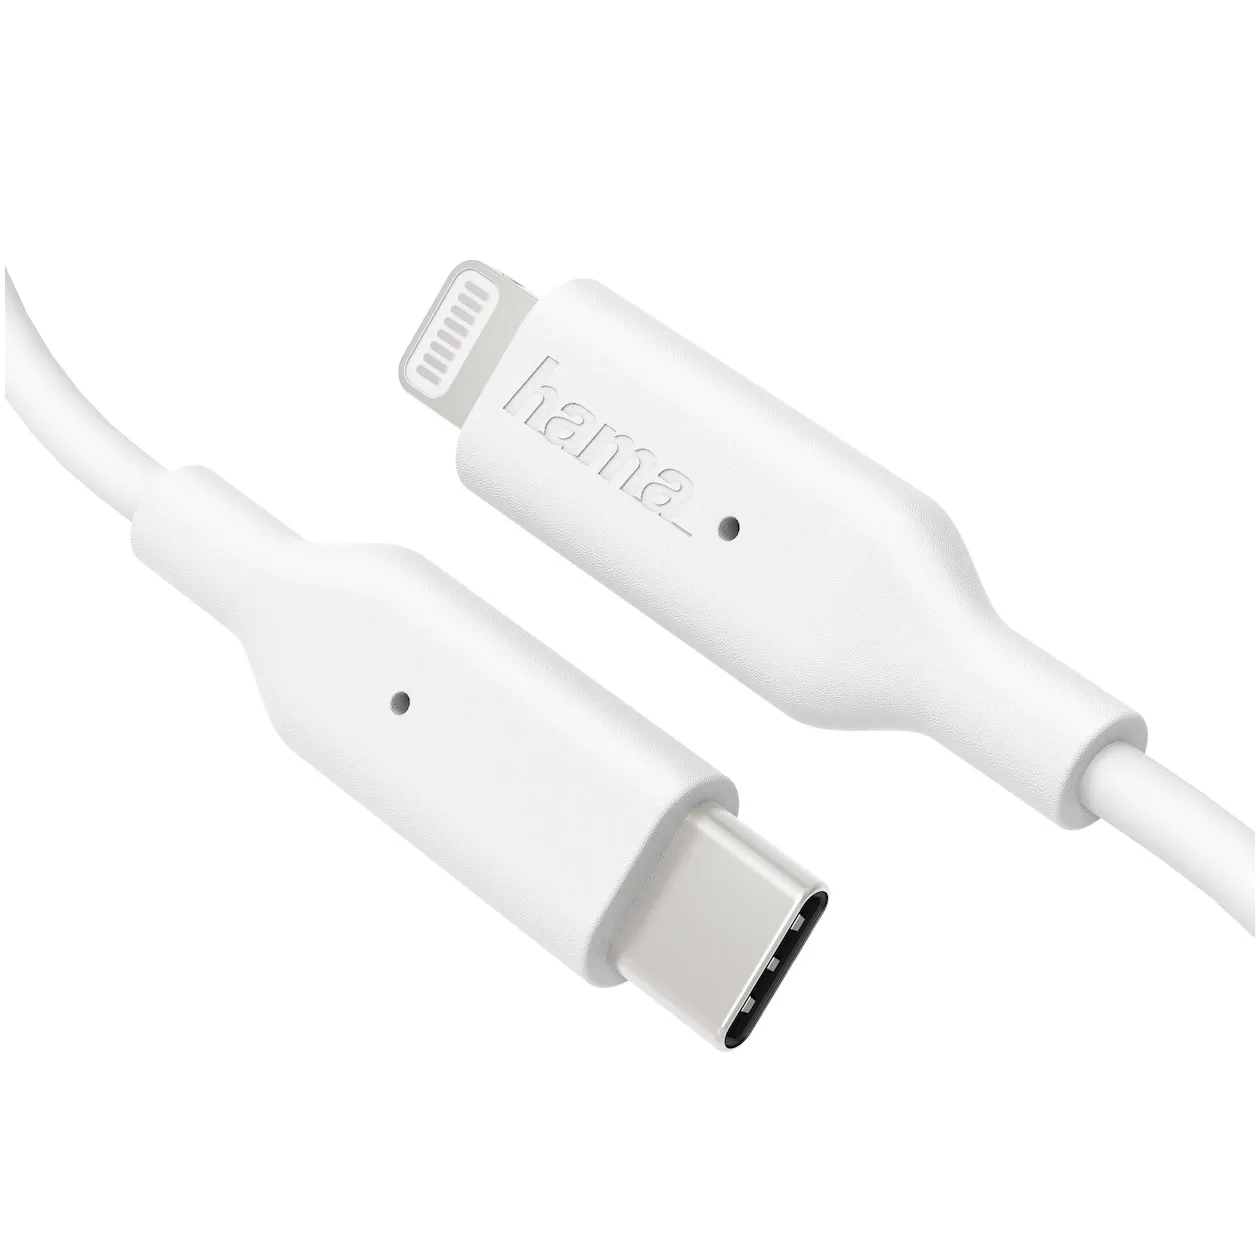 Hama Laadkabel USB-C naar Lightning 1 meter Wit